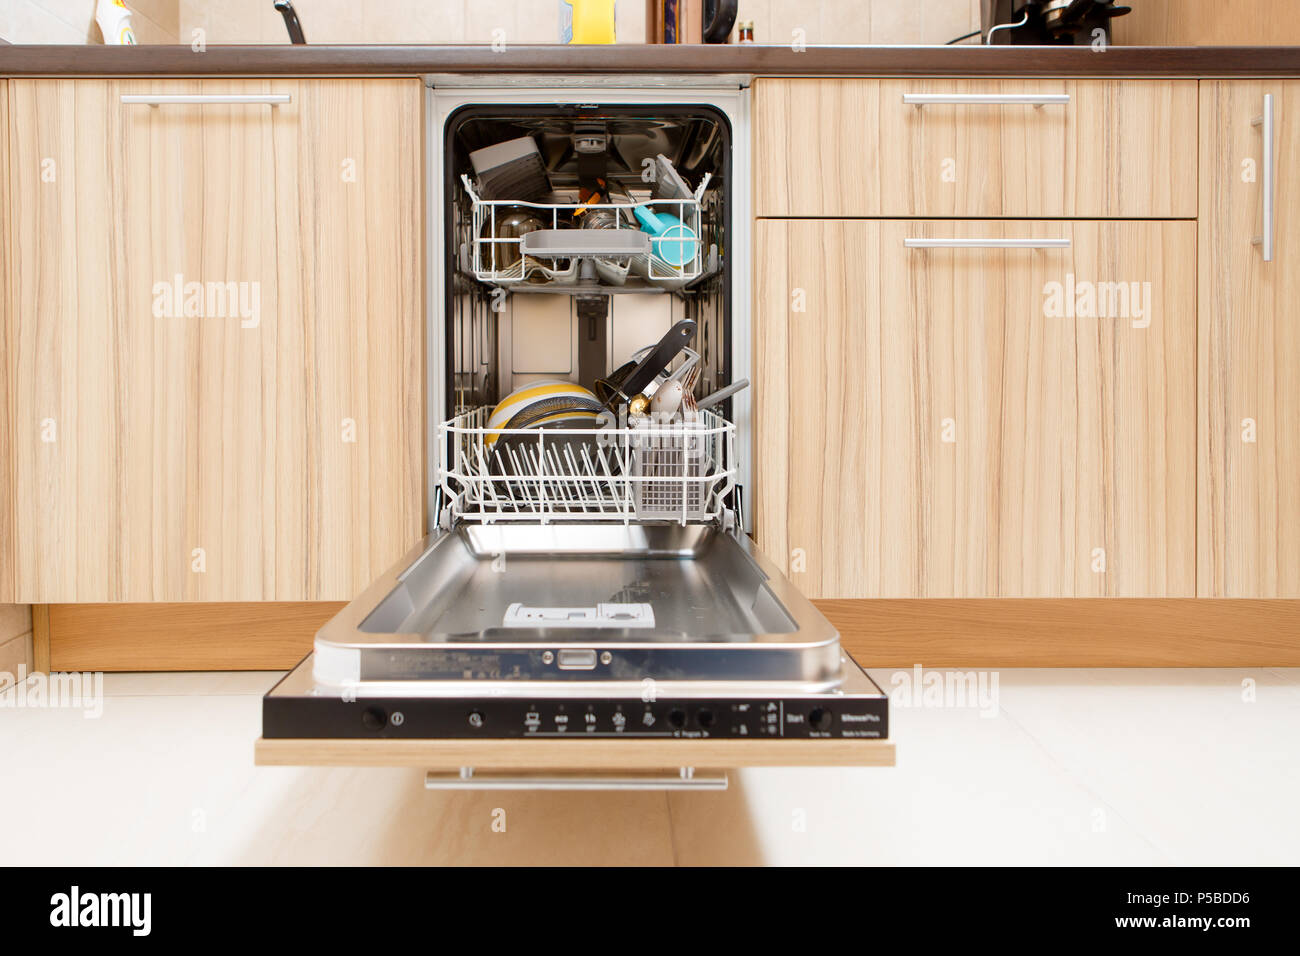 Immagine di aprire la lavastoviglie con i piatti sporchi Foto Stock